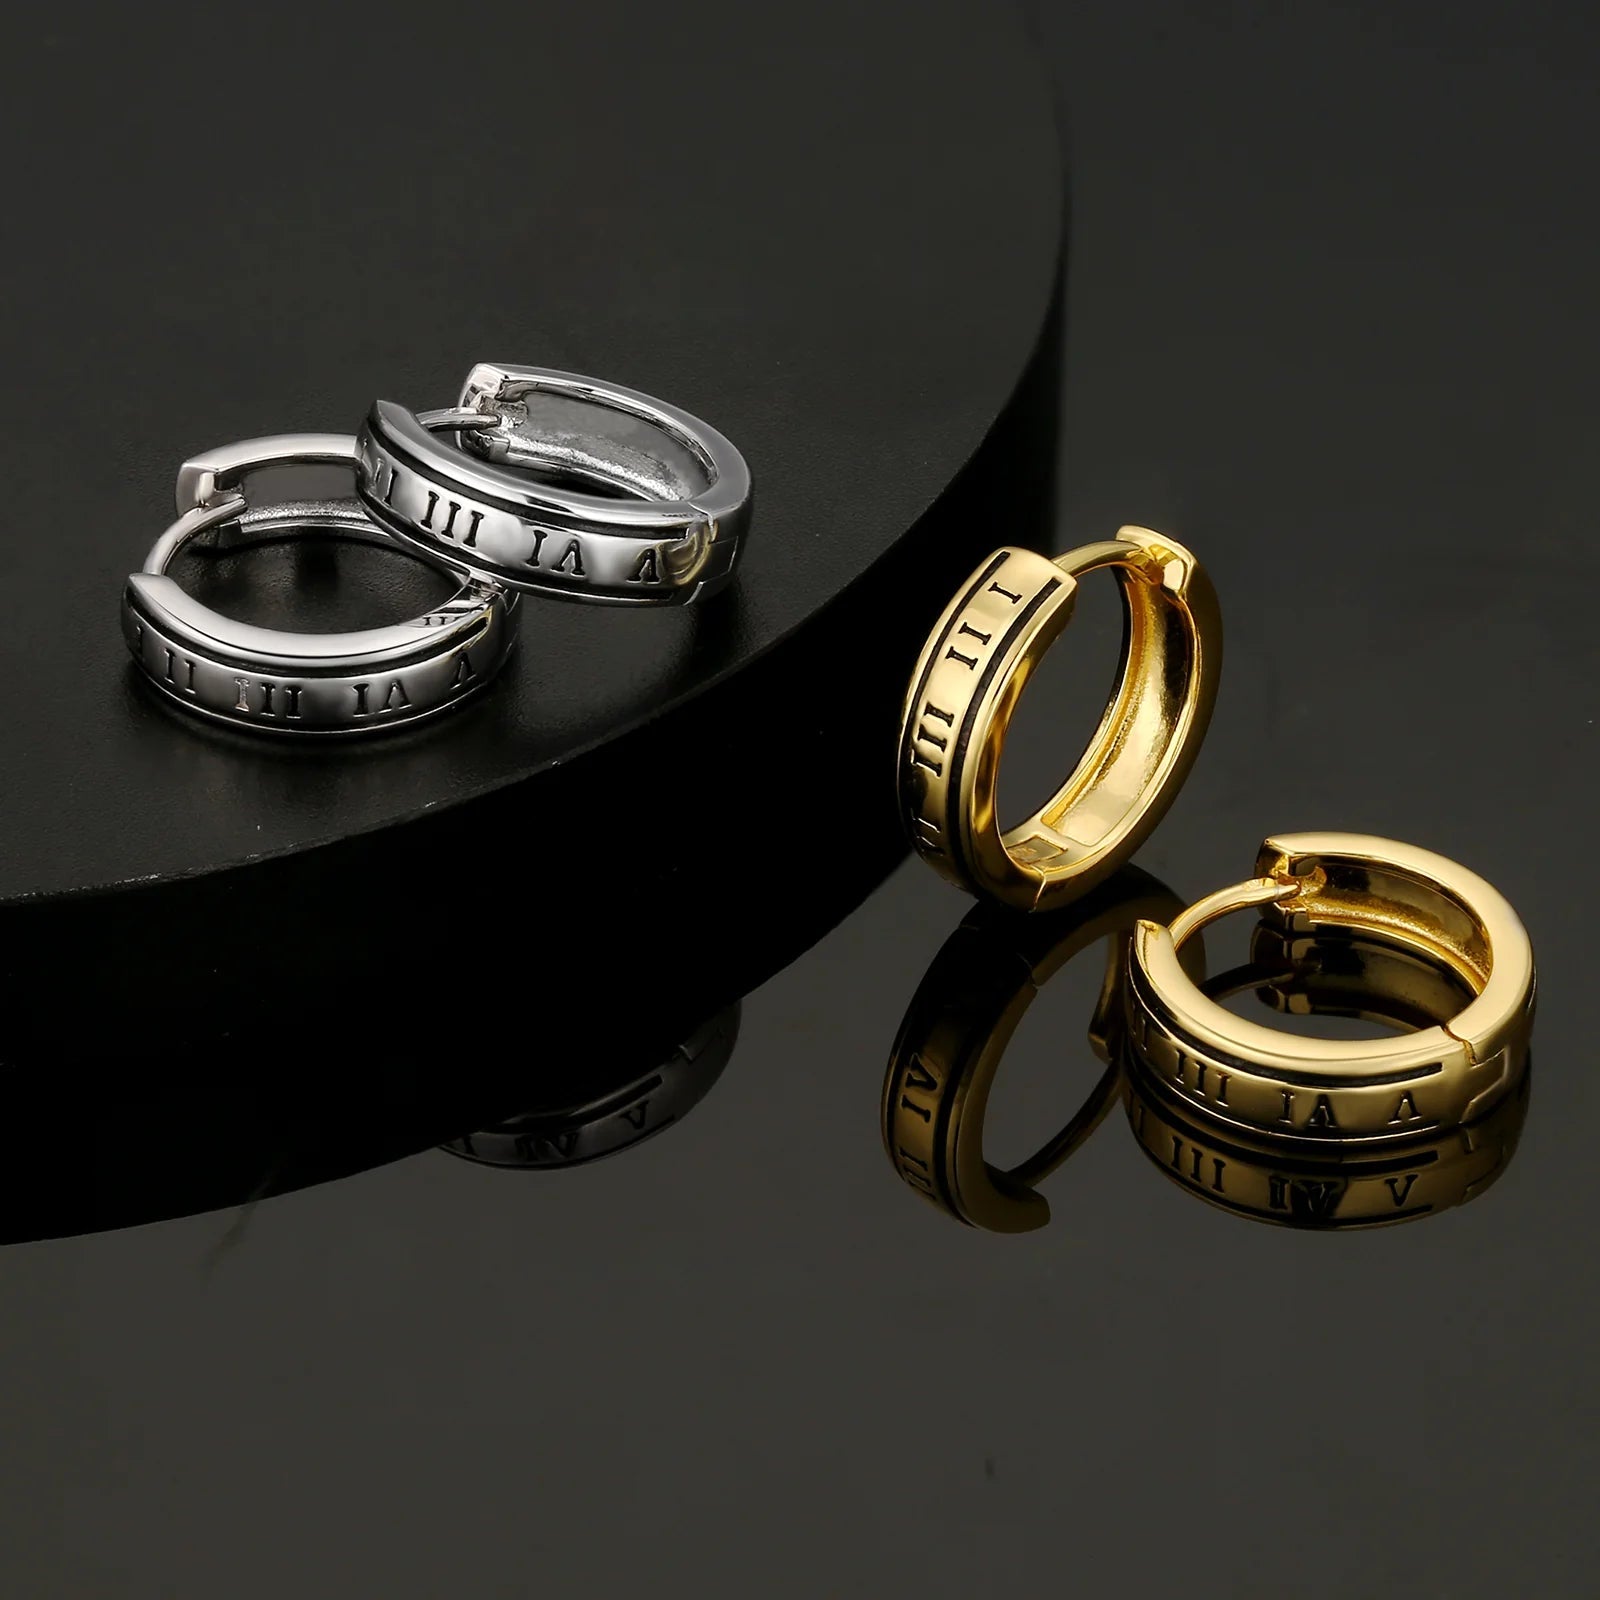 S925 Silver Black Roman Numerals Hoop Earrings in White Gold - 15mm Earrings 